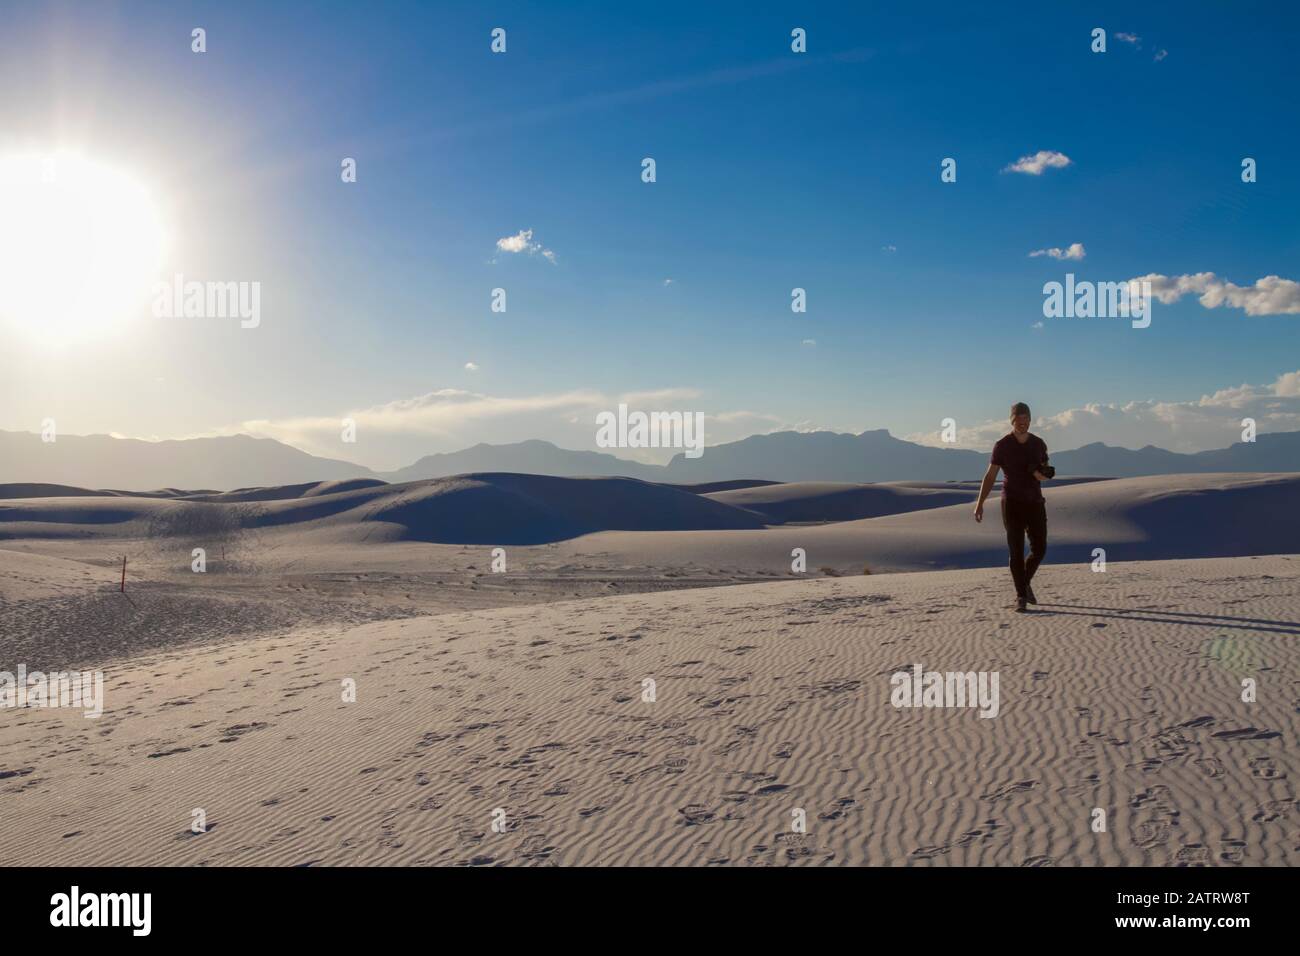 Männlicher Fotograf geht mit der Kamera auf den weißen Sand, White Sands National Monument; Alamogordo, New Mexico, Vereinigte Staaten von Amerika Stockfoto